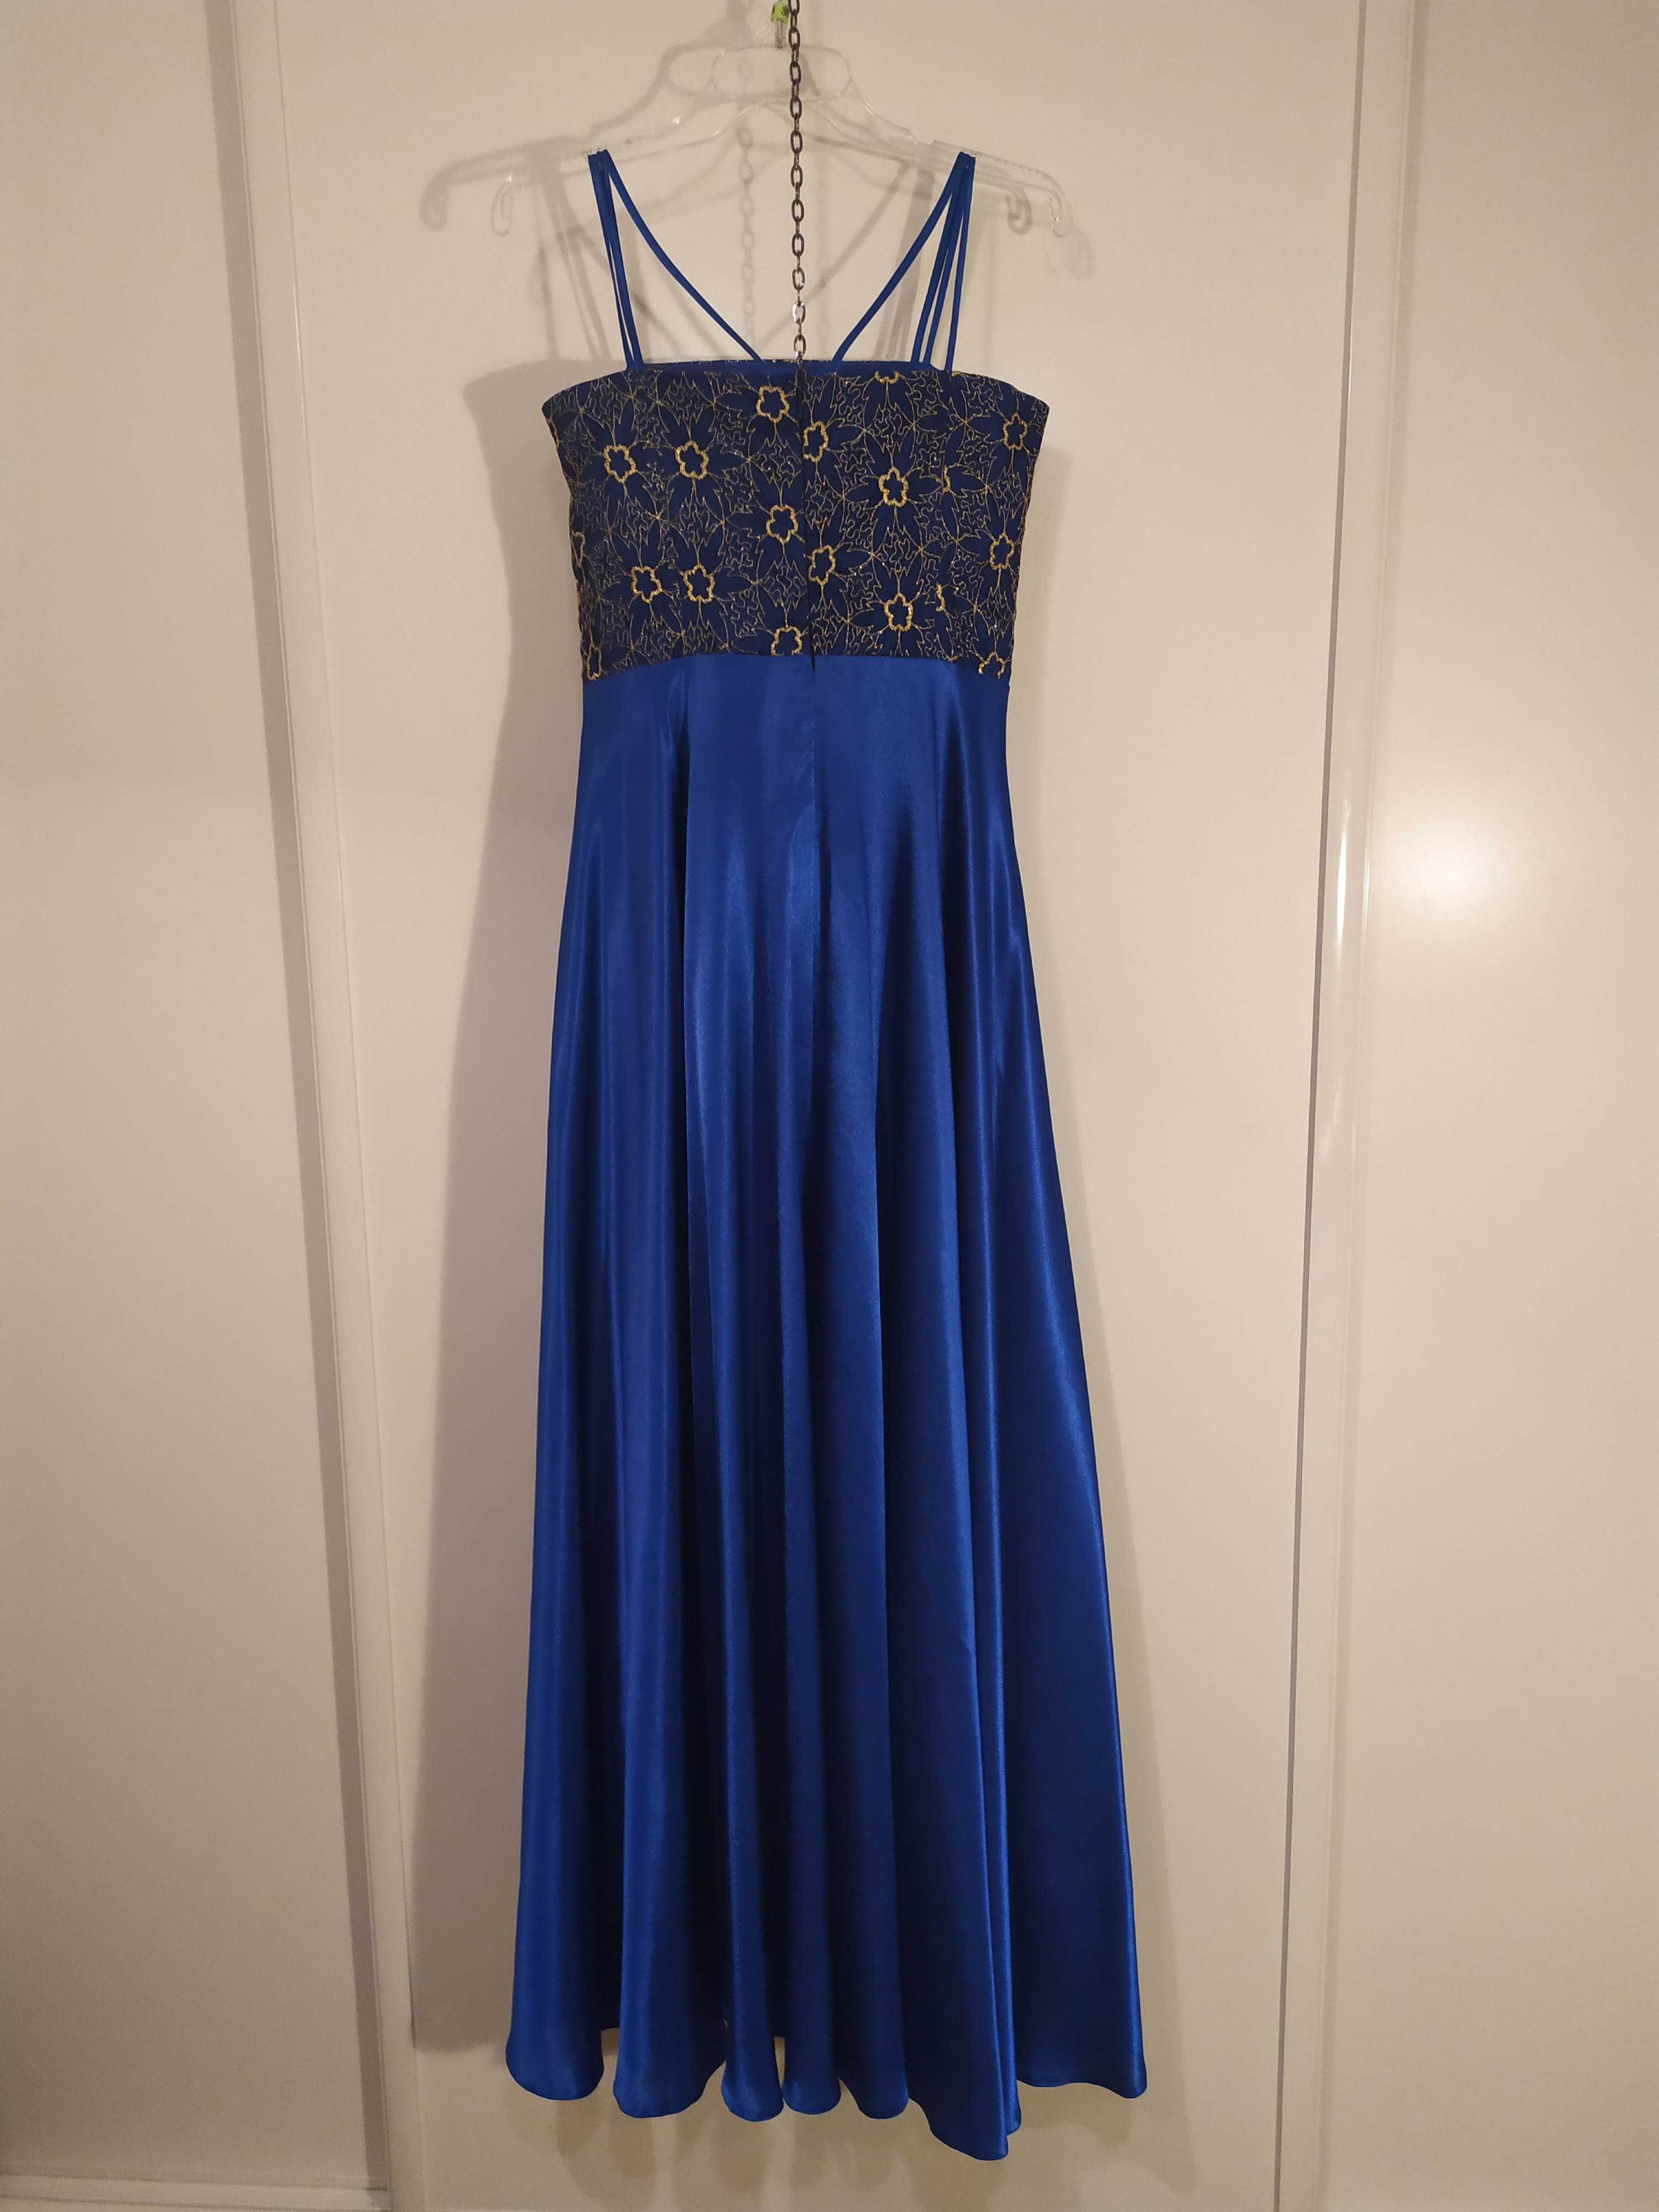 Niebieska suknia balowa/ koktailowa długa r. S